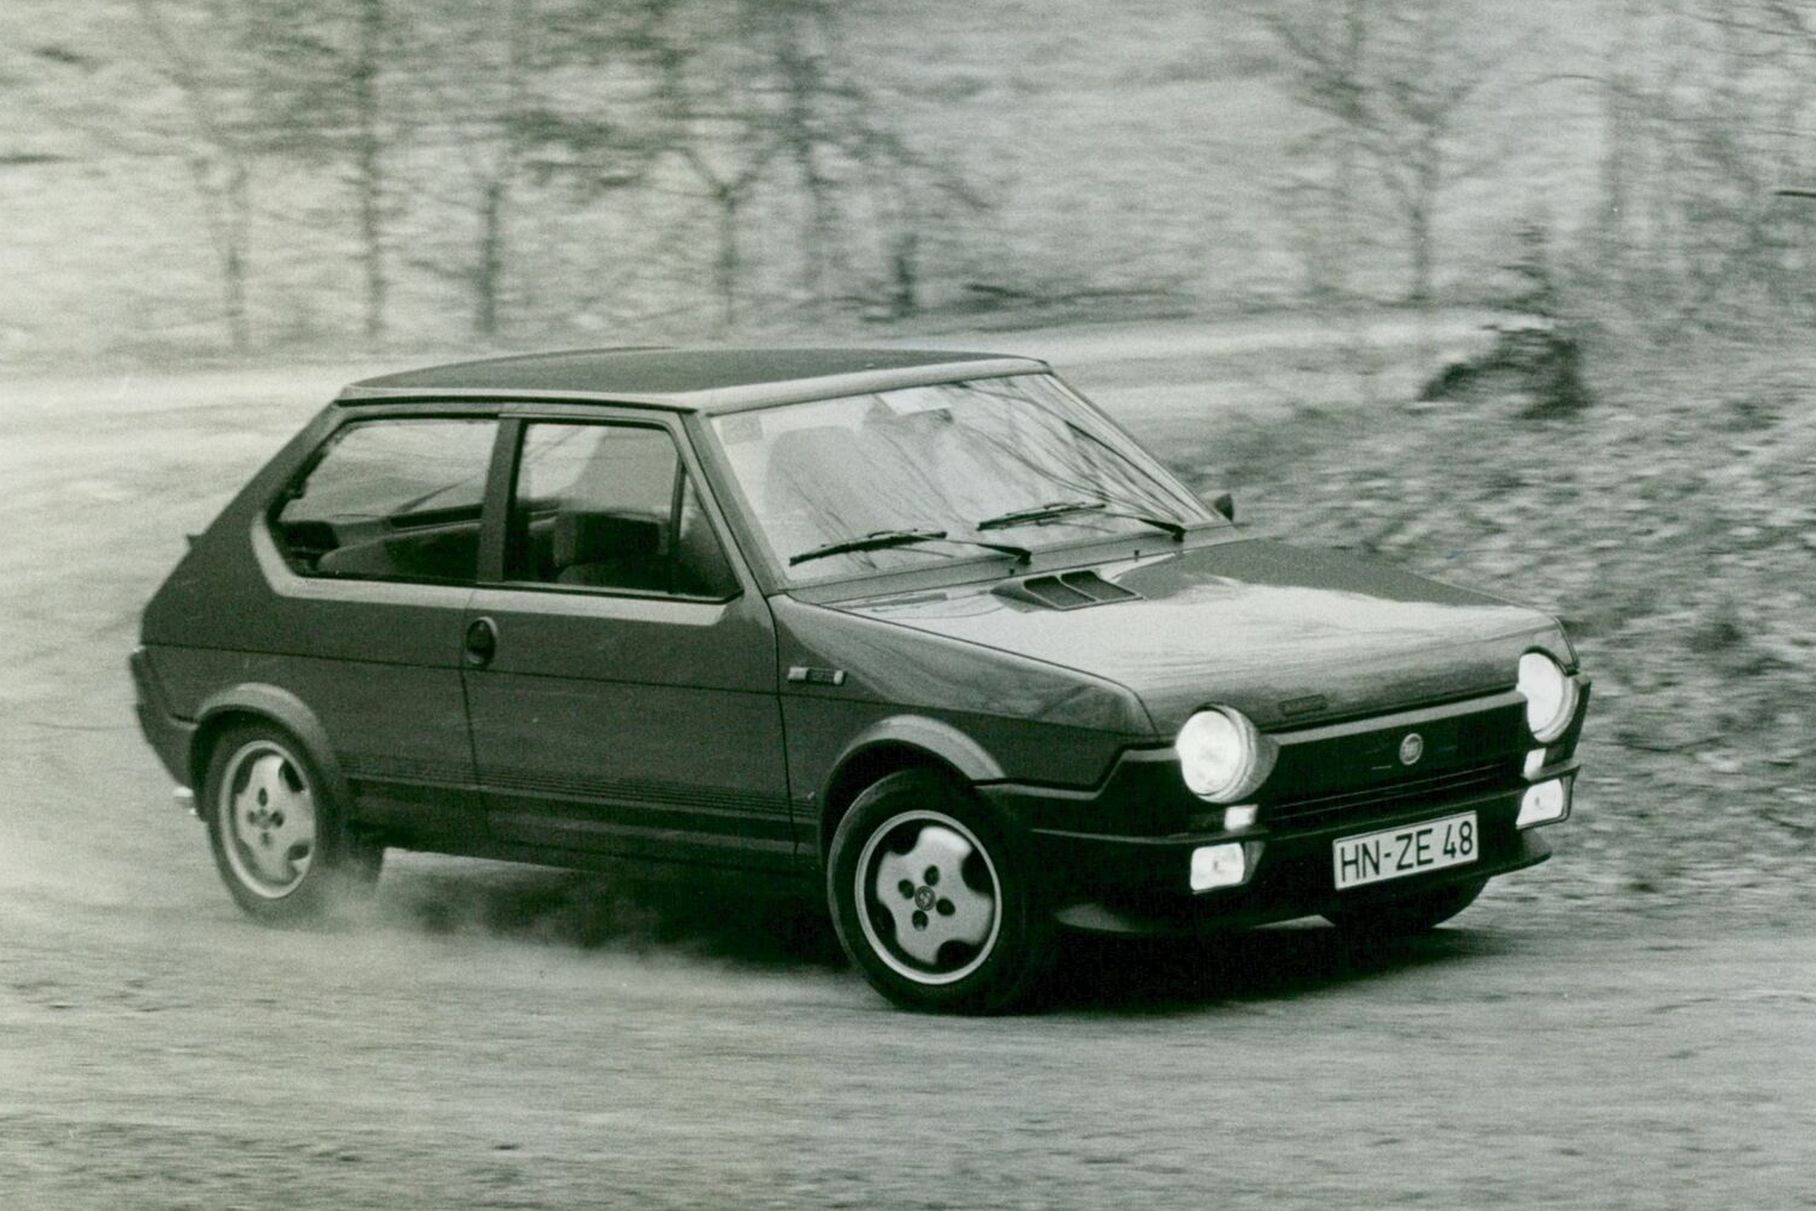 ###  Fiat Ritmo представили в 1978 году: это был хэтчбек ультрасовременного и очень эксцентричного вида, построенный на переднеприводной платформе предыдущей модели — технически прорывного, но заурядного на вид Fiat 128. А три года спустя итальянцы вывели на рынок топ-версию Abarth 125 TC. Под капот компактного хэтчбека поставили огромный по тем временам двигатель — двухлитровую версию легендарного мотора Fiat «Twin Cam» конструкции Аурелио Лампреди. Кроме того, эмблемы Abarth подразумевали вентилируемые тормоза, спортивную подвеску и пятиступенчатую коробку передач.